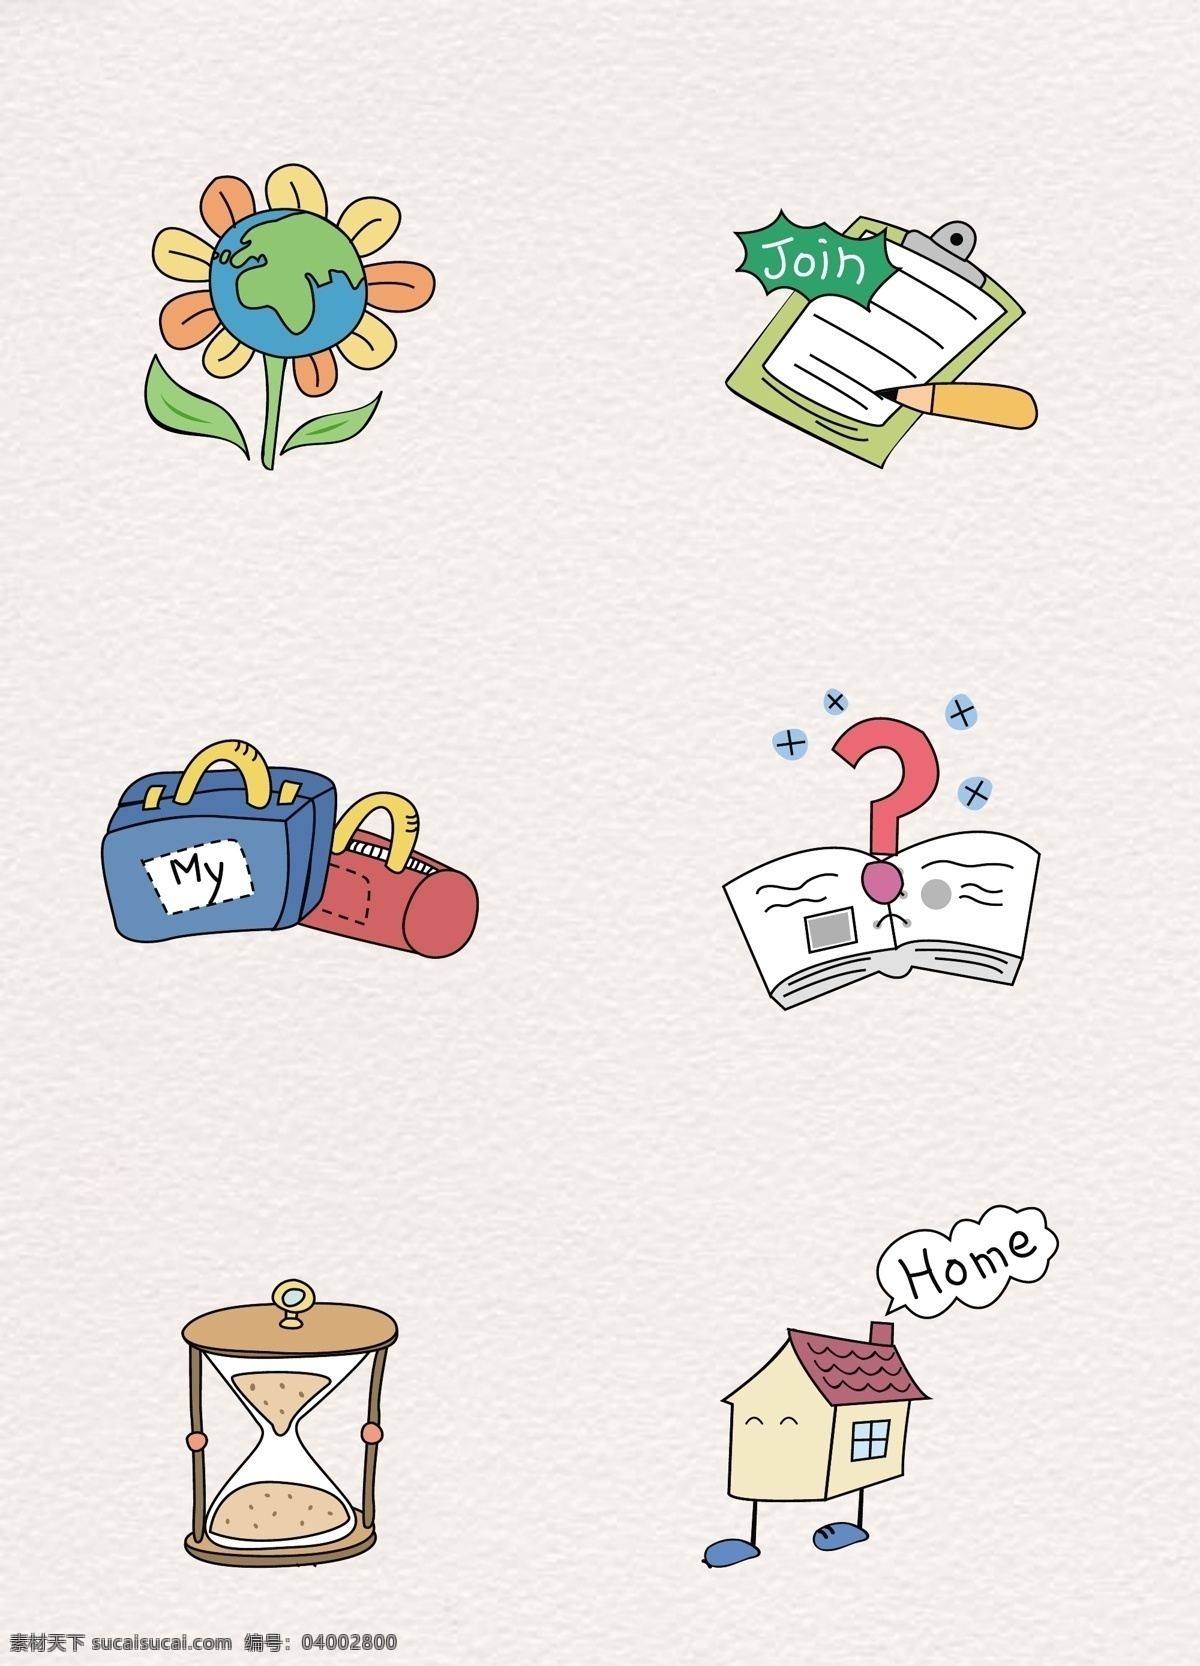 可爱 韩国 手绘 生活 小 图标 元素 矢量图标 问号 房子 小清晰 彩绘 花 调查表 旅行箱 沙漏